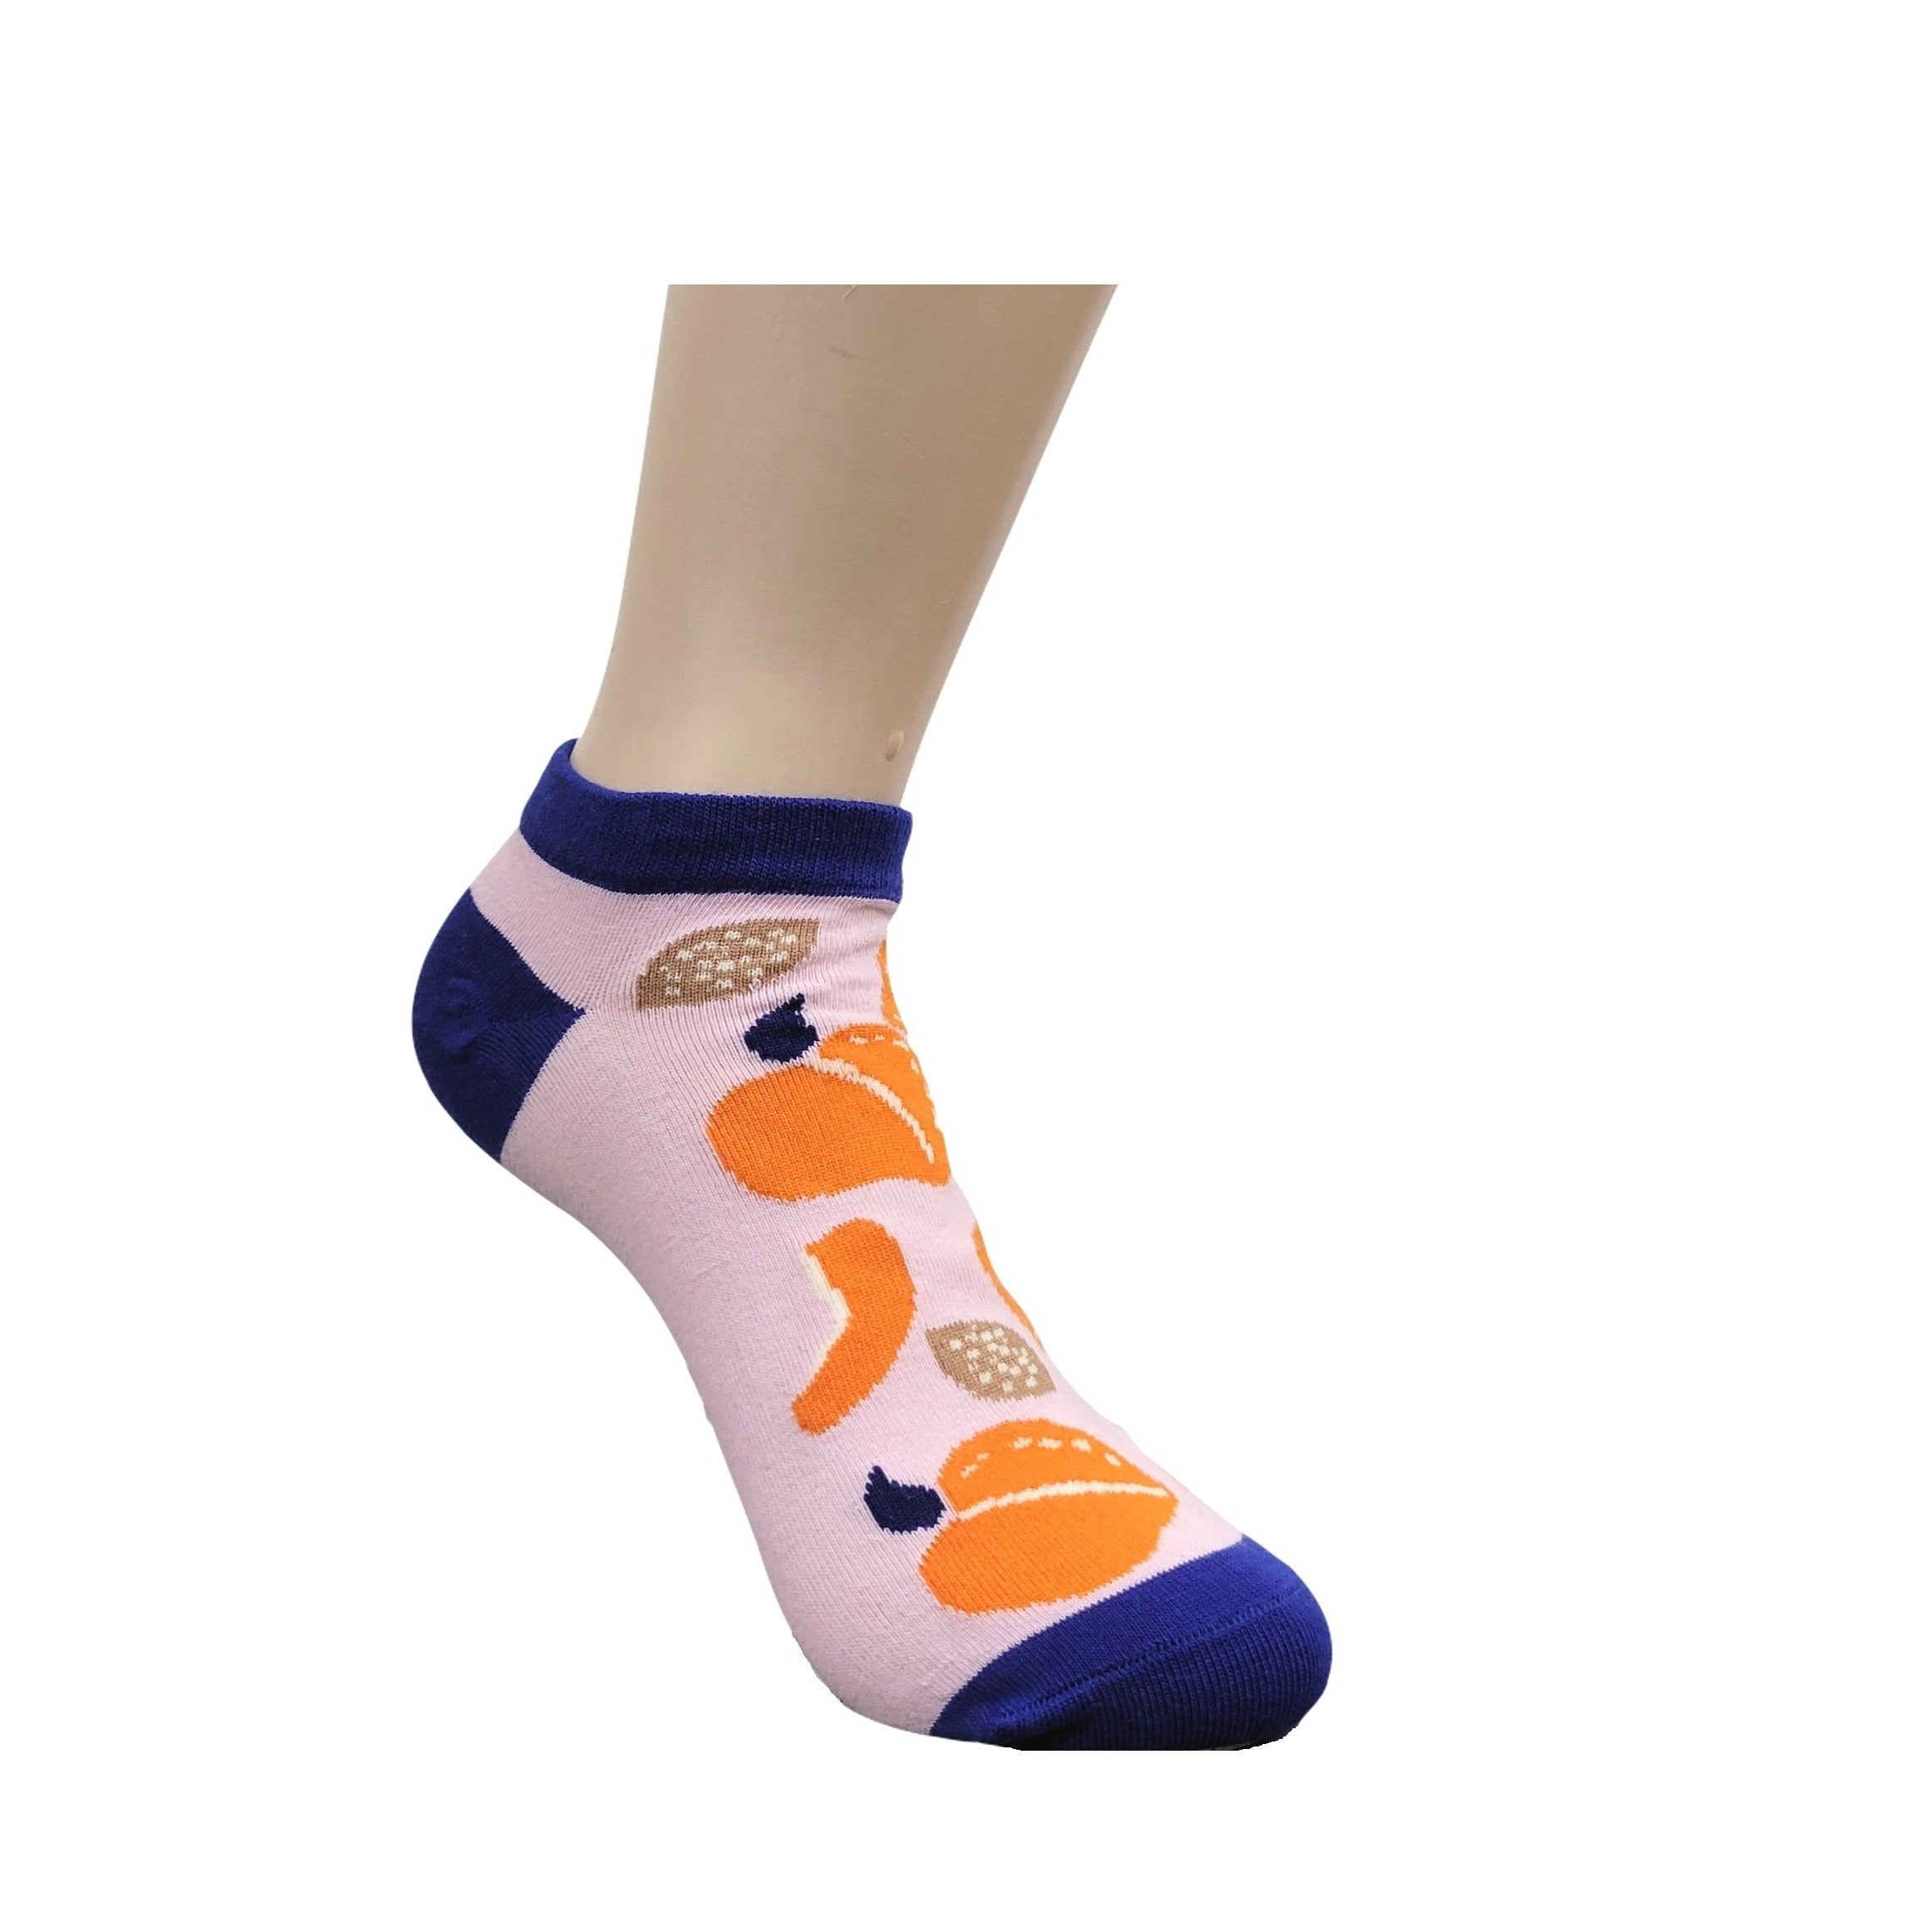 Peach Patterned Ankle Socks (Adult Medium)